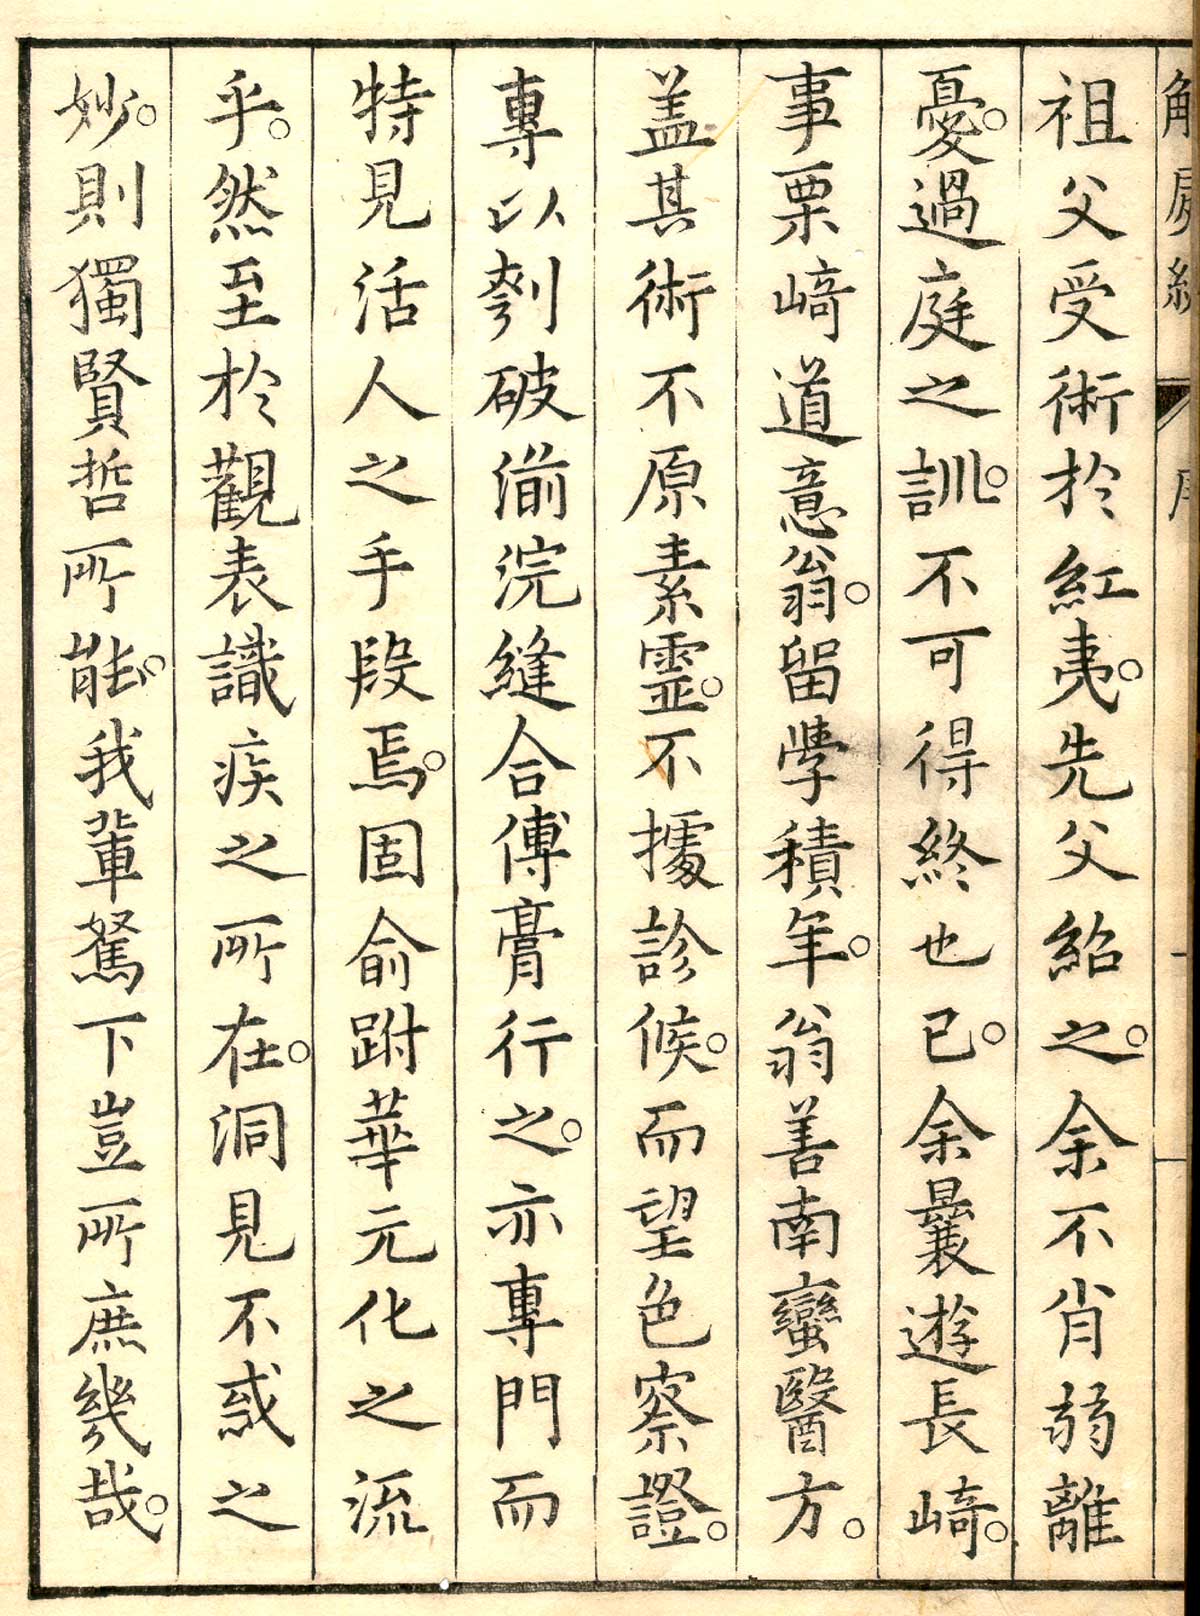 Woodcut title page of Shinnin Kawaguchi's Kaishi hen, NLM Call no.: WZ 260 K21k 1772.